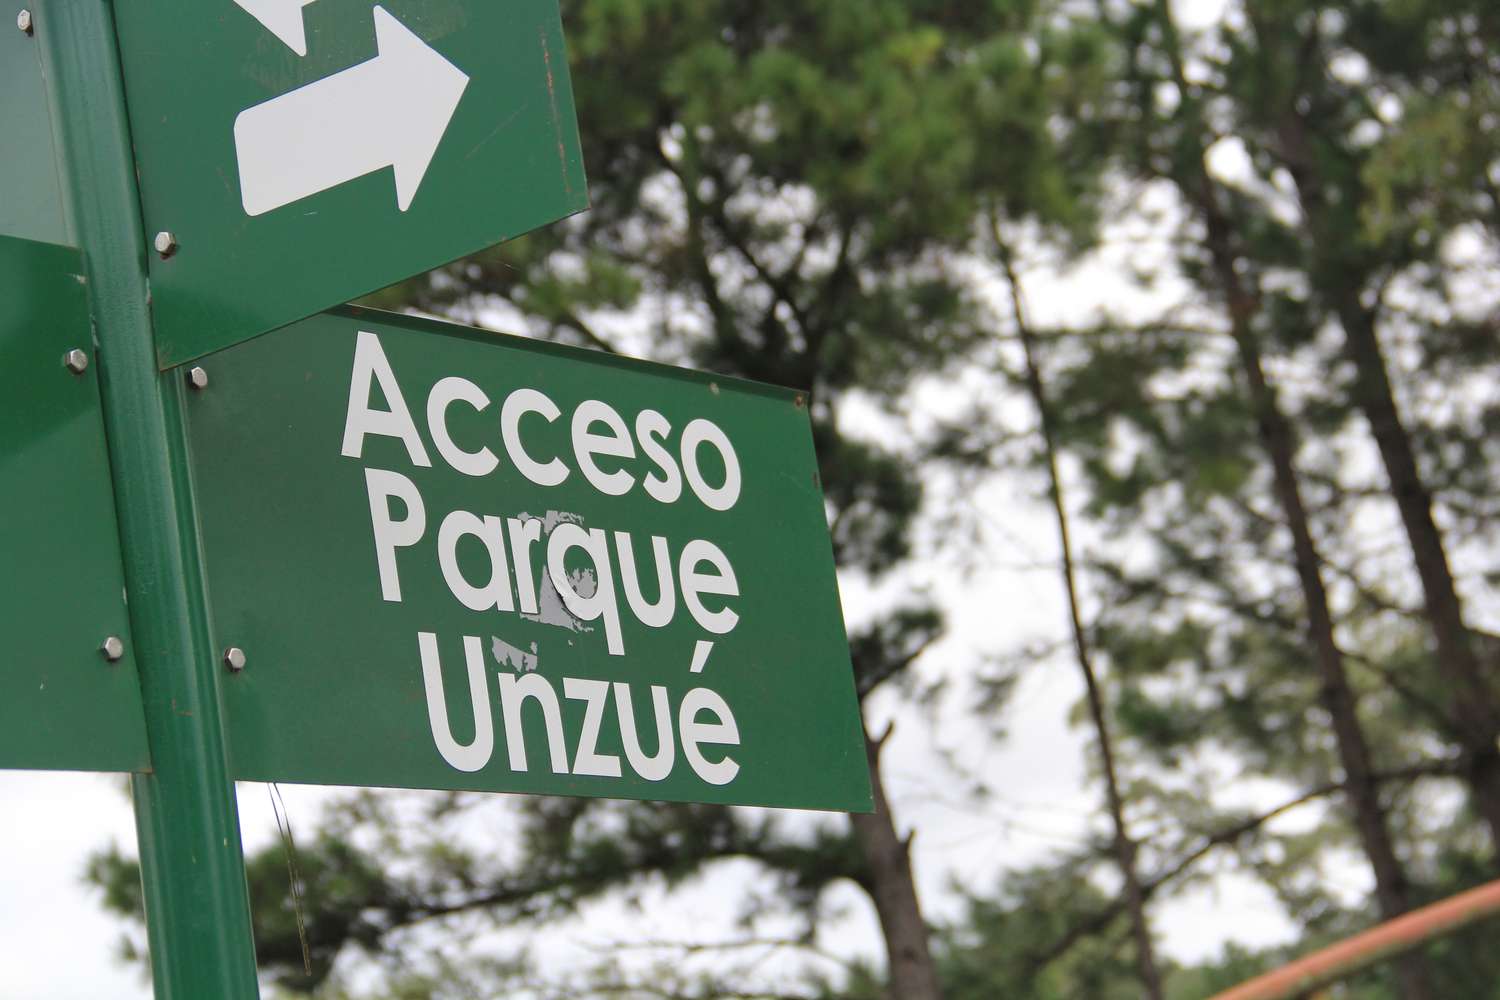 Regresó a Buenos Aires la mujer que fue hallada en el Parque Unzué intoxicada